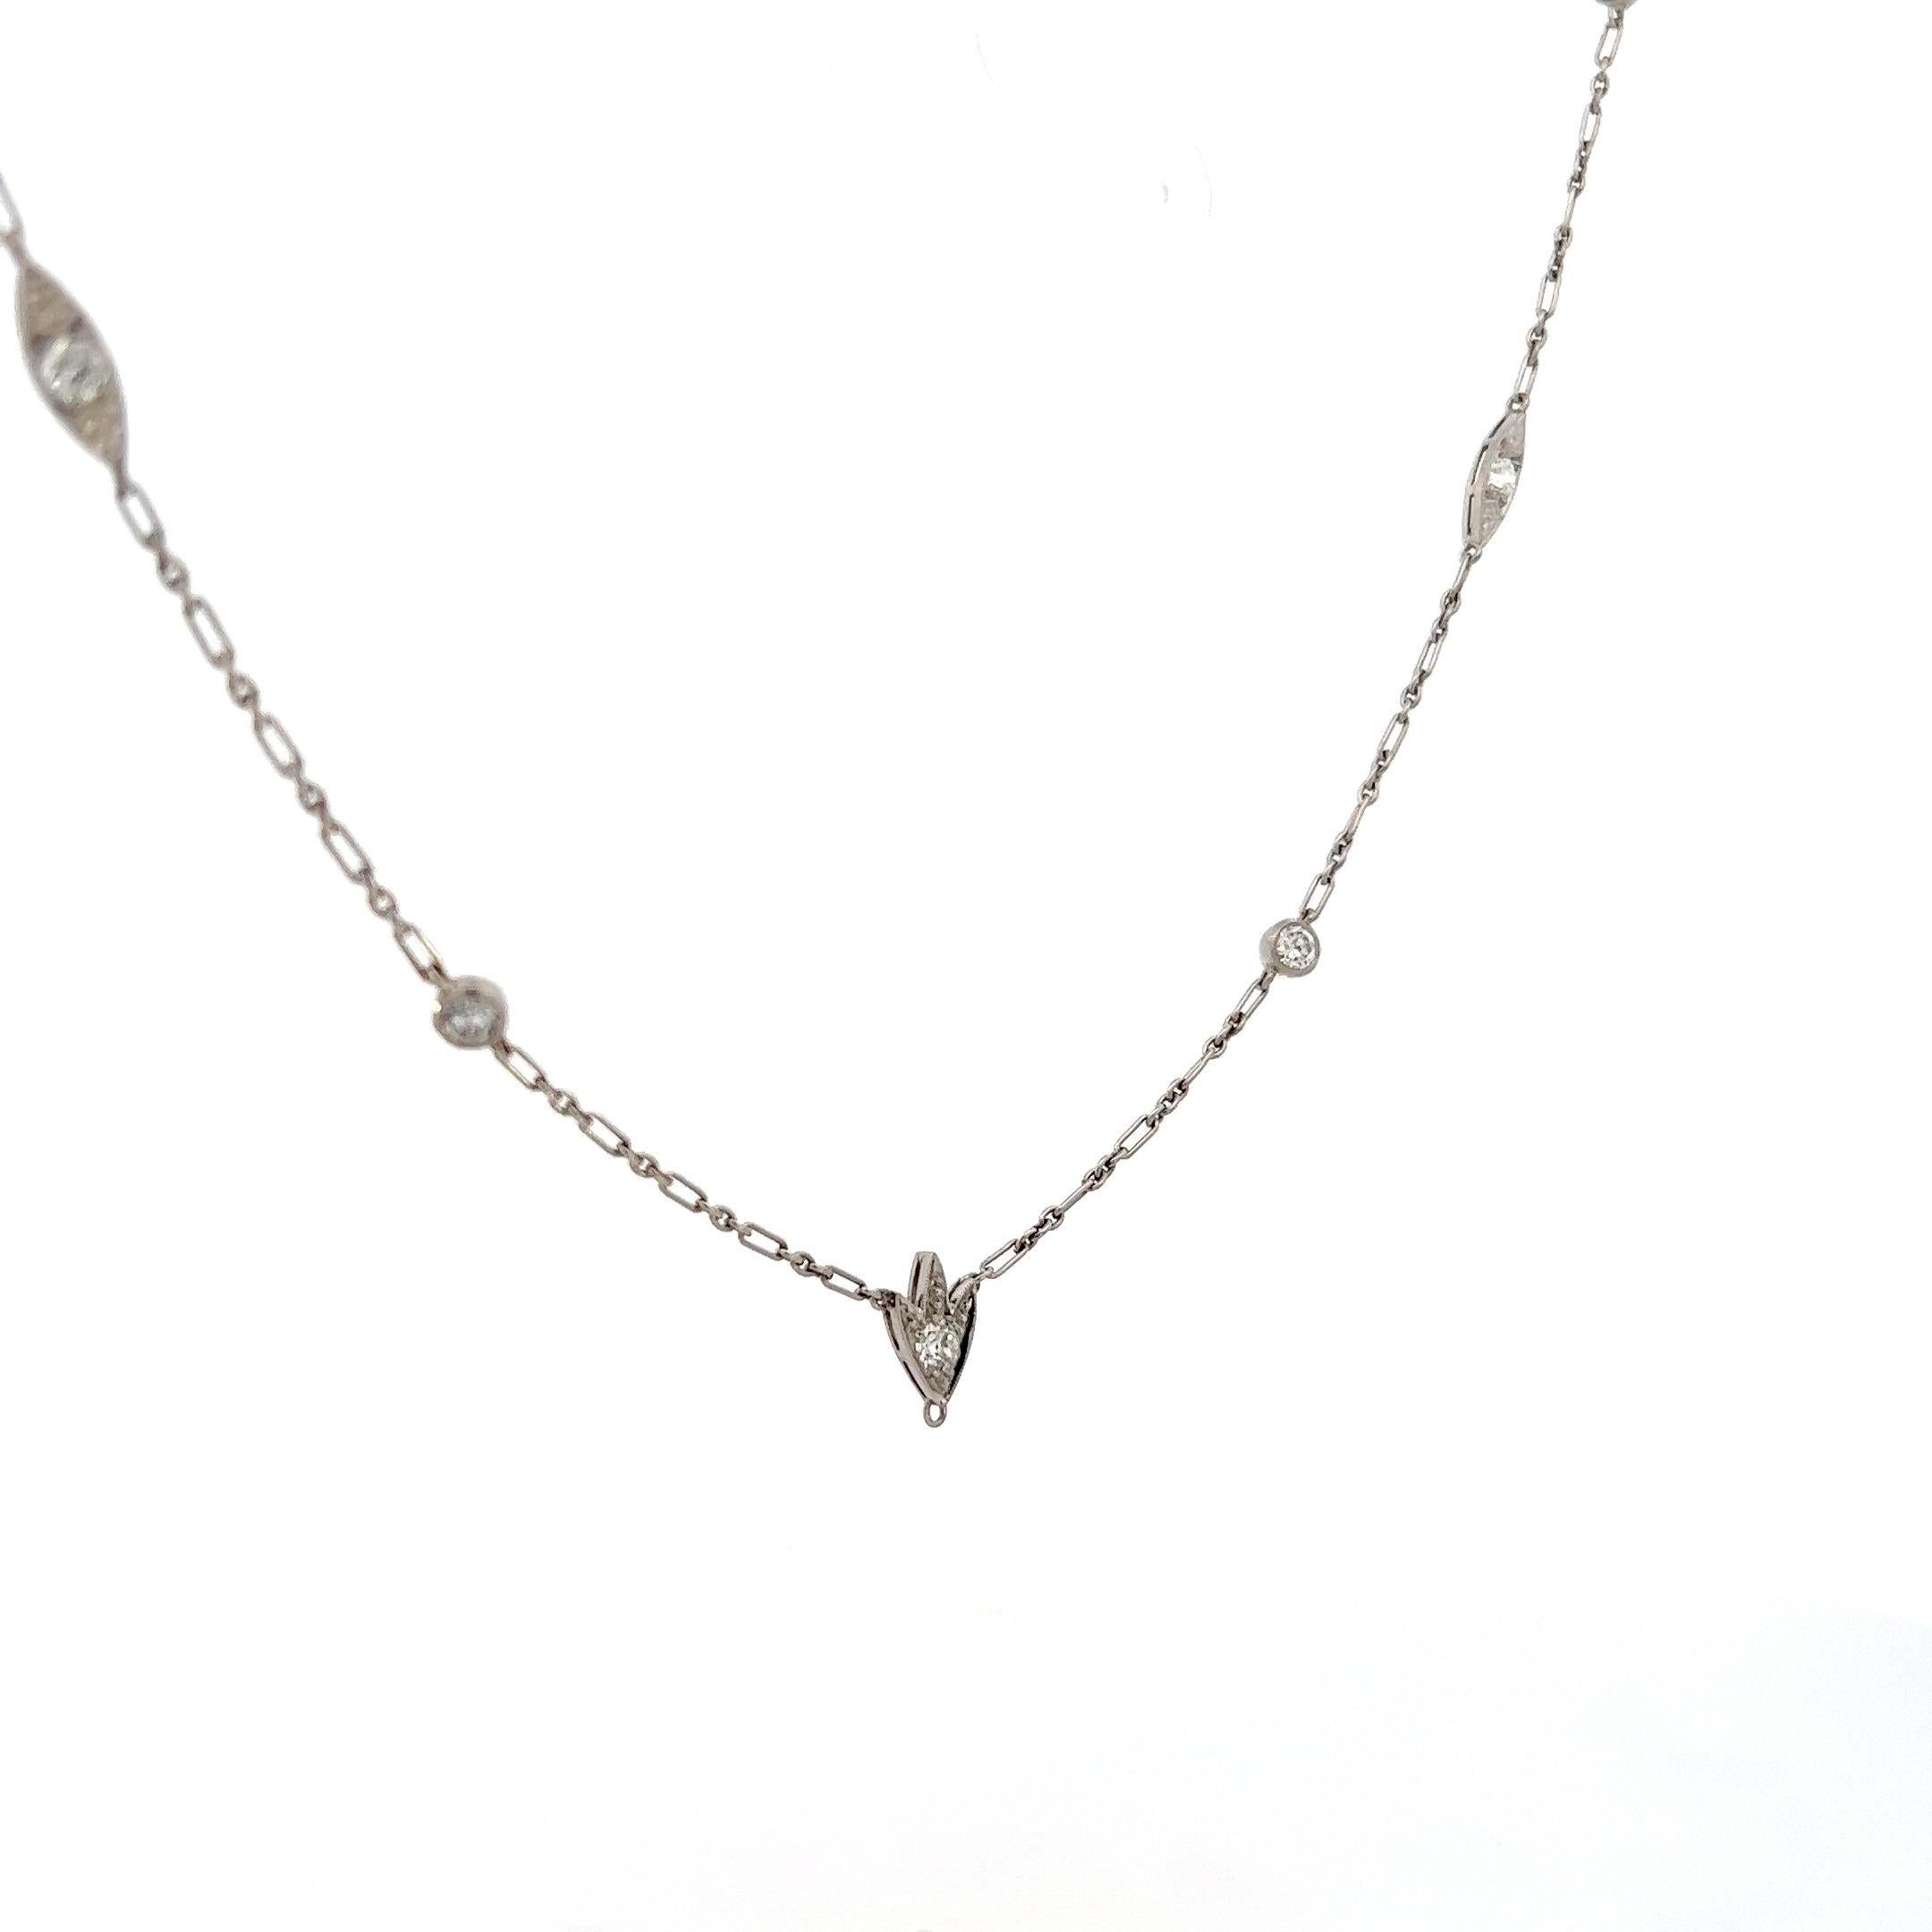 Women's or Men's 1925 Art Deco 15” Platinum Necklace w/ Euro Cut Diamonds  For Sale